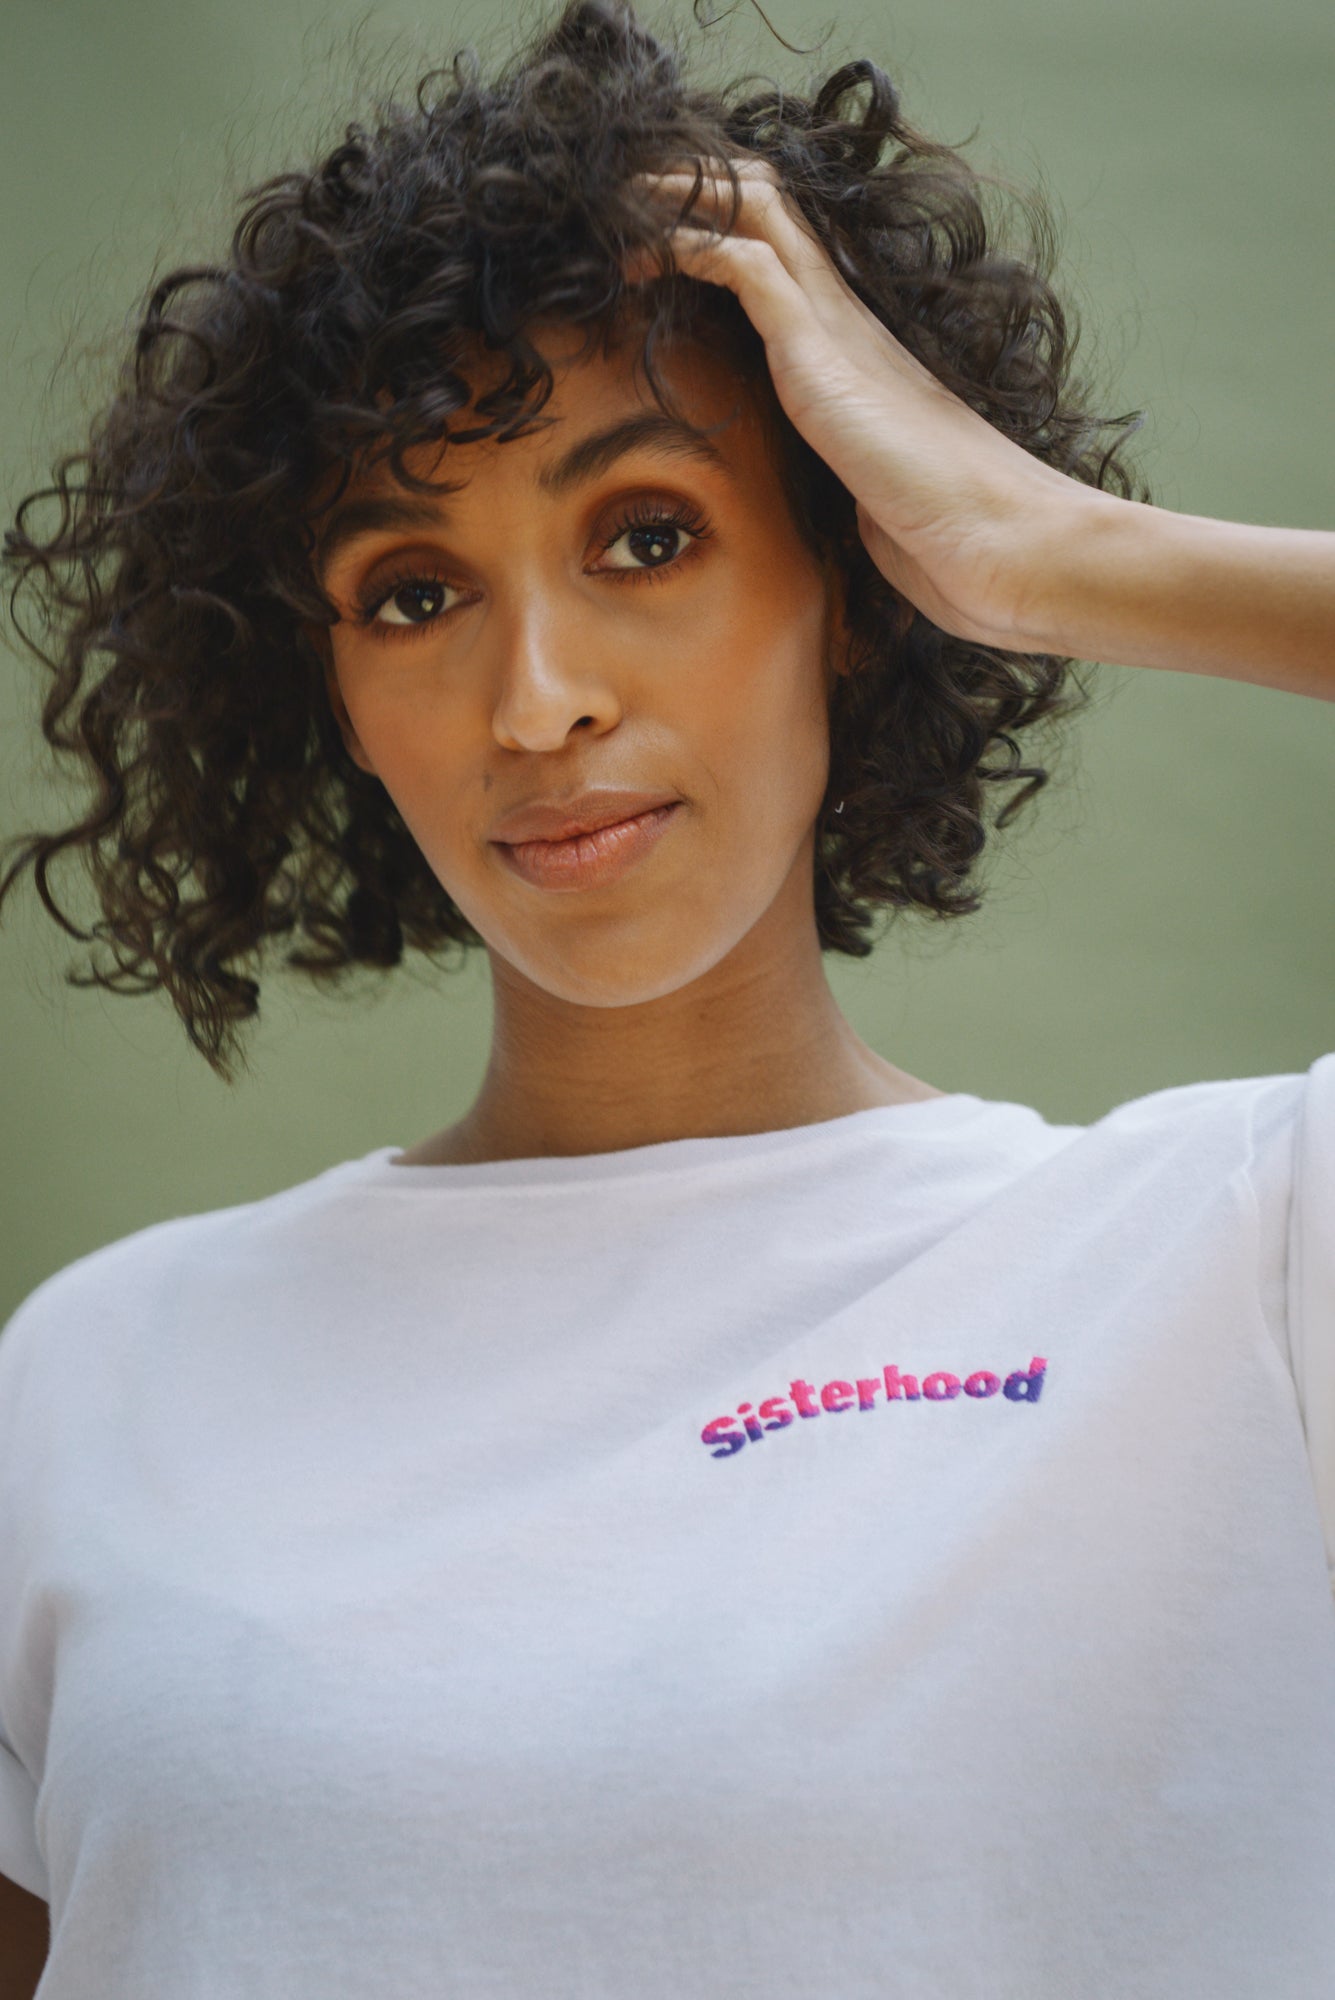 Sisterhood - Organic Cotton Embroidery Cropped T-shirt - Mayamiko Sustainable Fashion